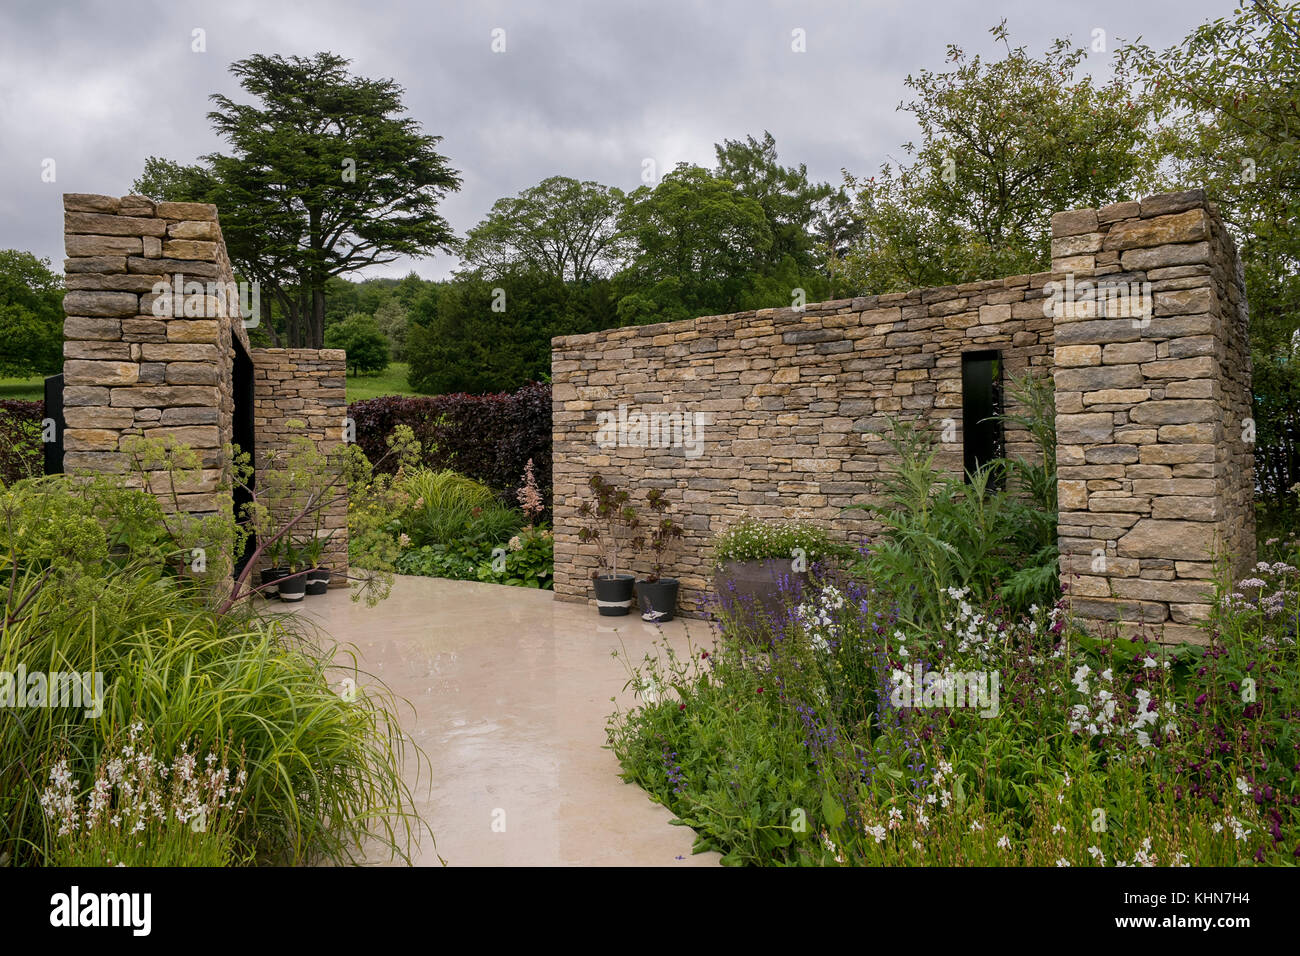 Wände Tierheim ruhigen, abgeschiedenen Bereich mit Pflanzen im Landhausstil Garten - Wedgewood Garten, RHS Chatsworth House Flower Show, Derbyshire, England, UK. Stockfoto